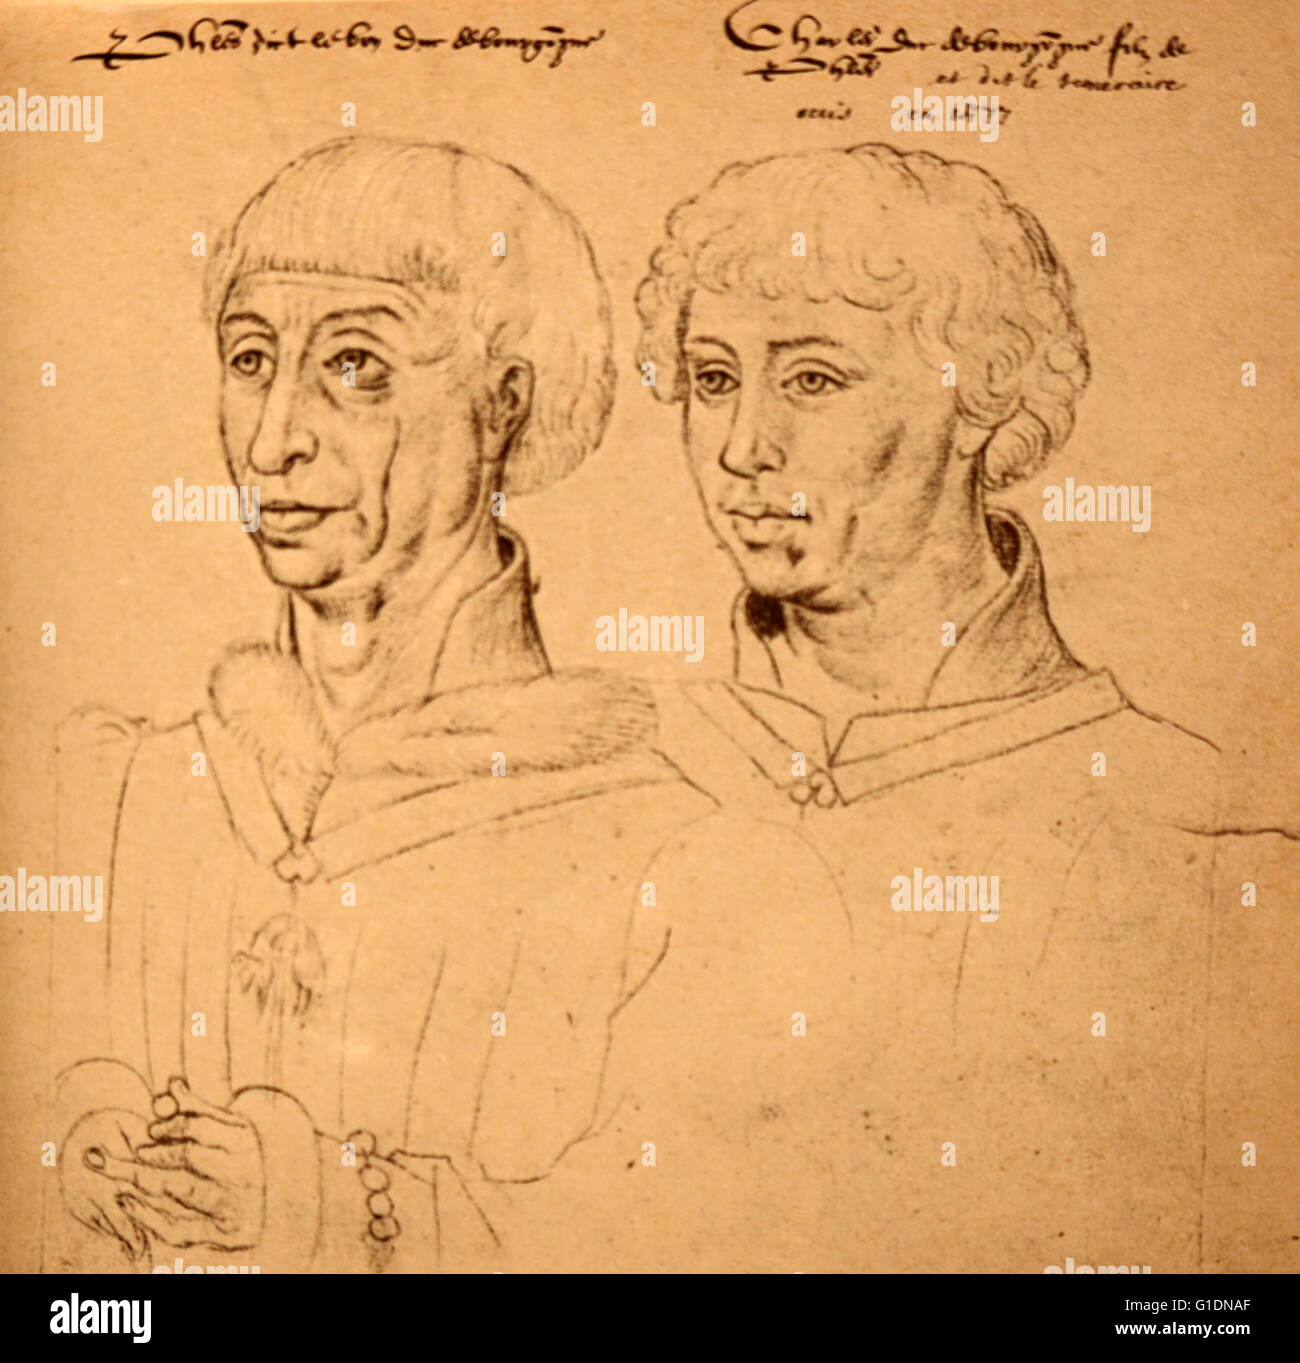 Croquis de Philippe le Bon, duc de Bourgogne (1396-1467) et son fils Charles le Téméraire (1433-1477). En date du 15e siècle Banque D'Images